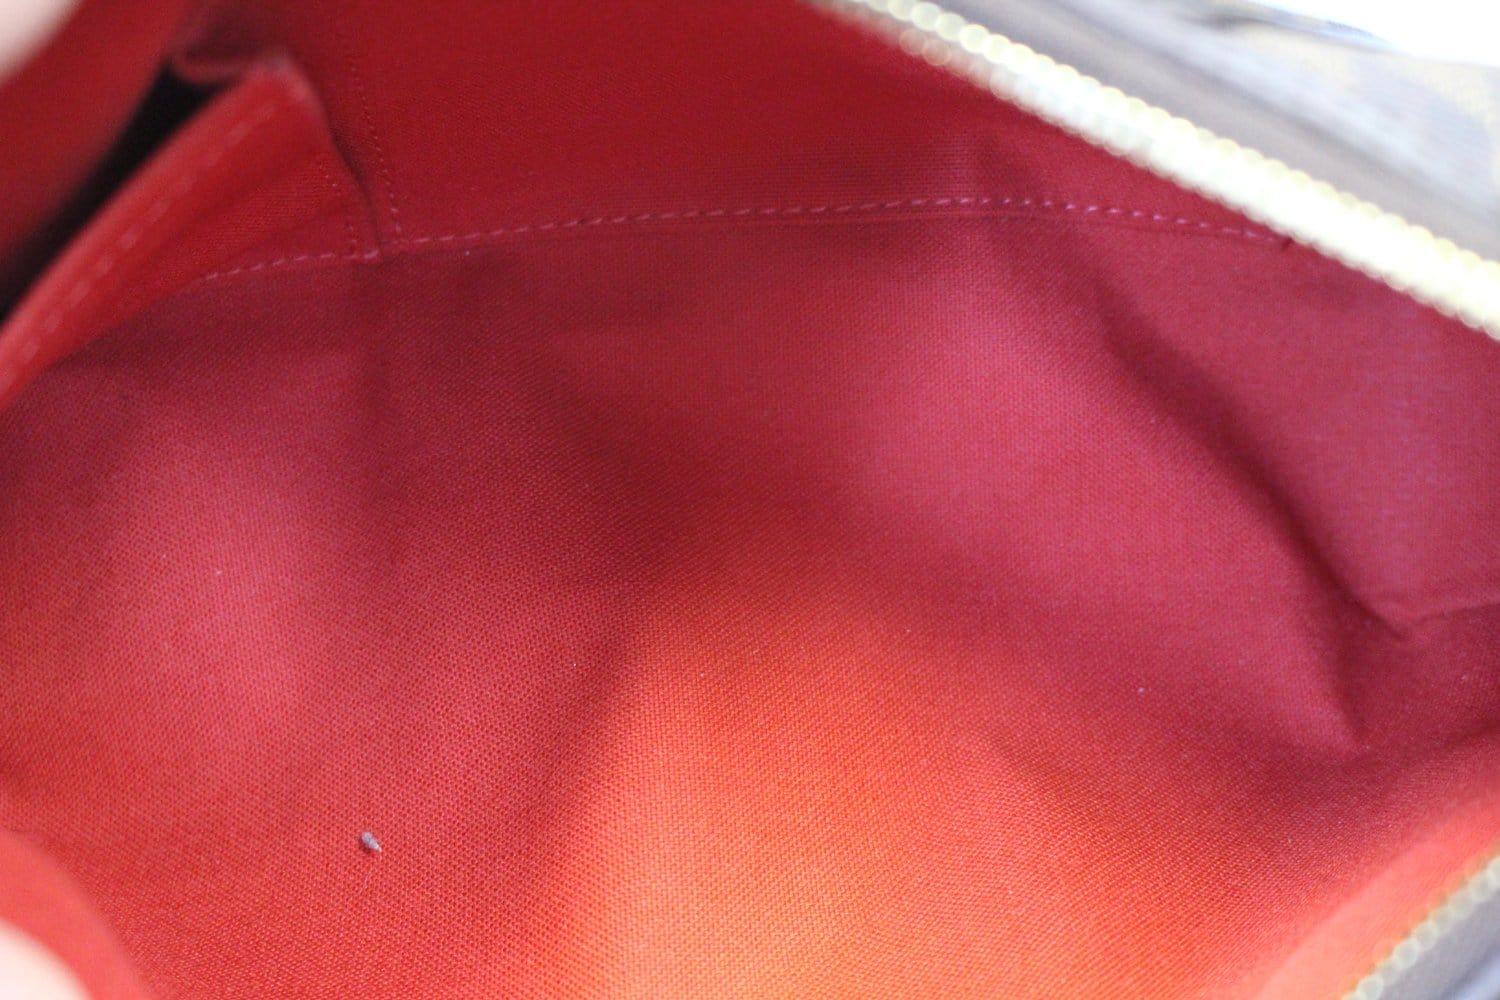 PRELOVED Louis Vuitton Damier Ebene Thames PM Shoulder Bag SD5018